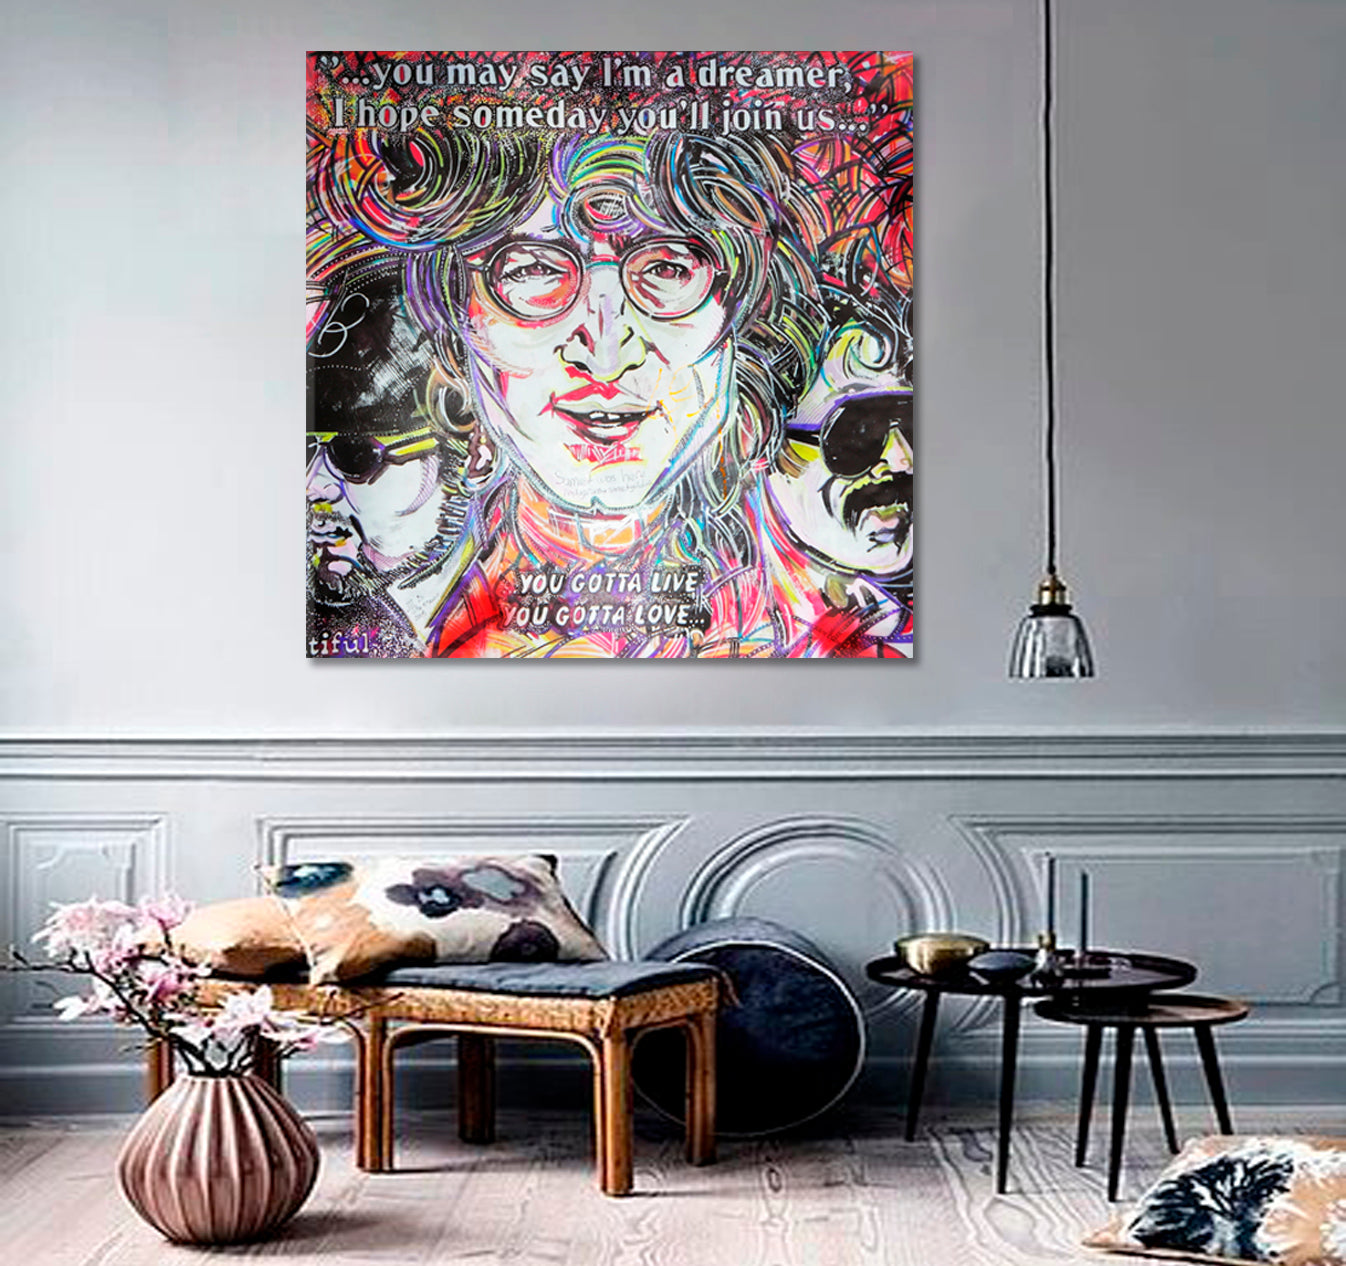 John Lennon Inspired Lyrics from Beatles Songs Street Art - S Street Art Canvas Print Artesty   